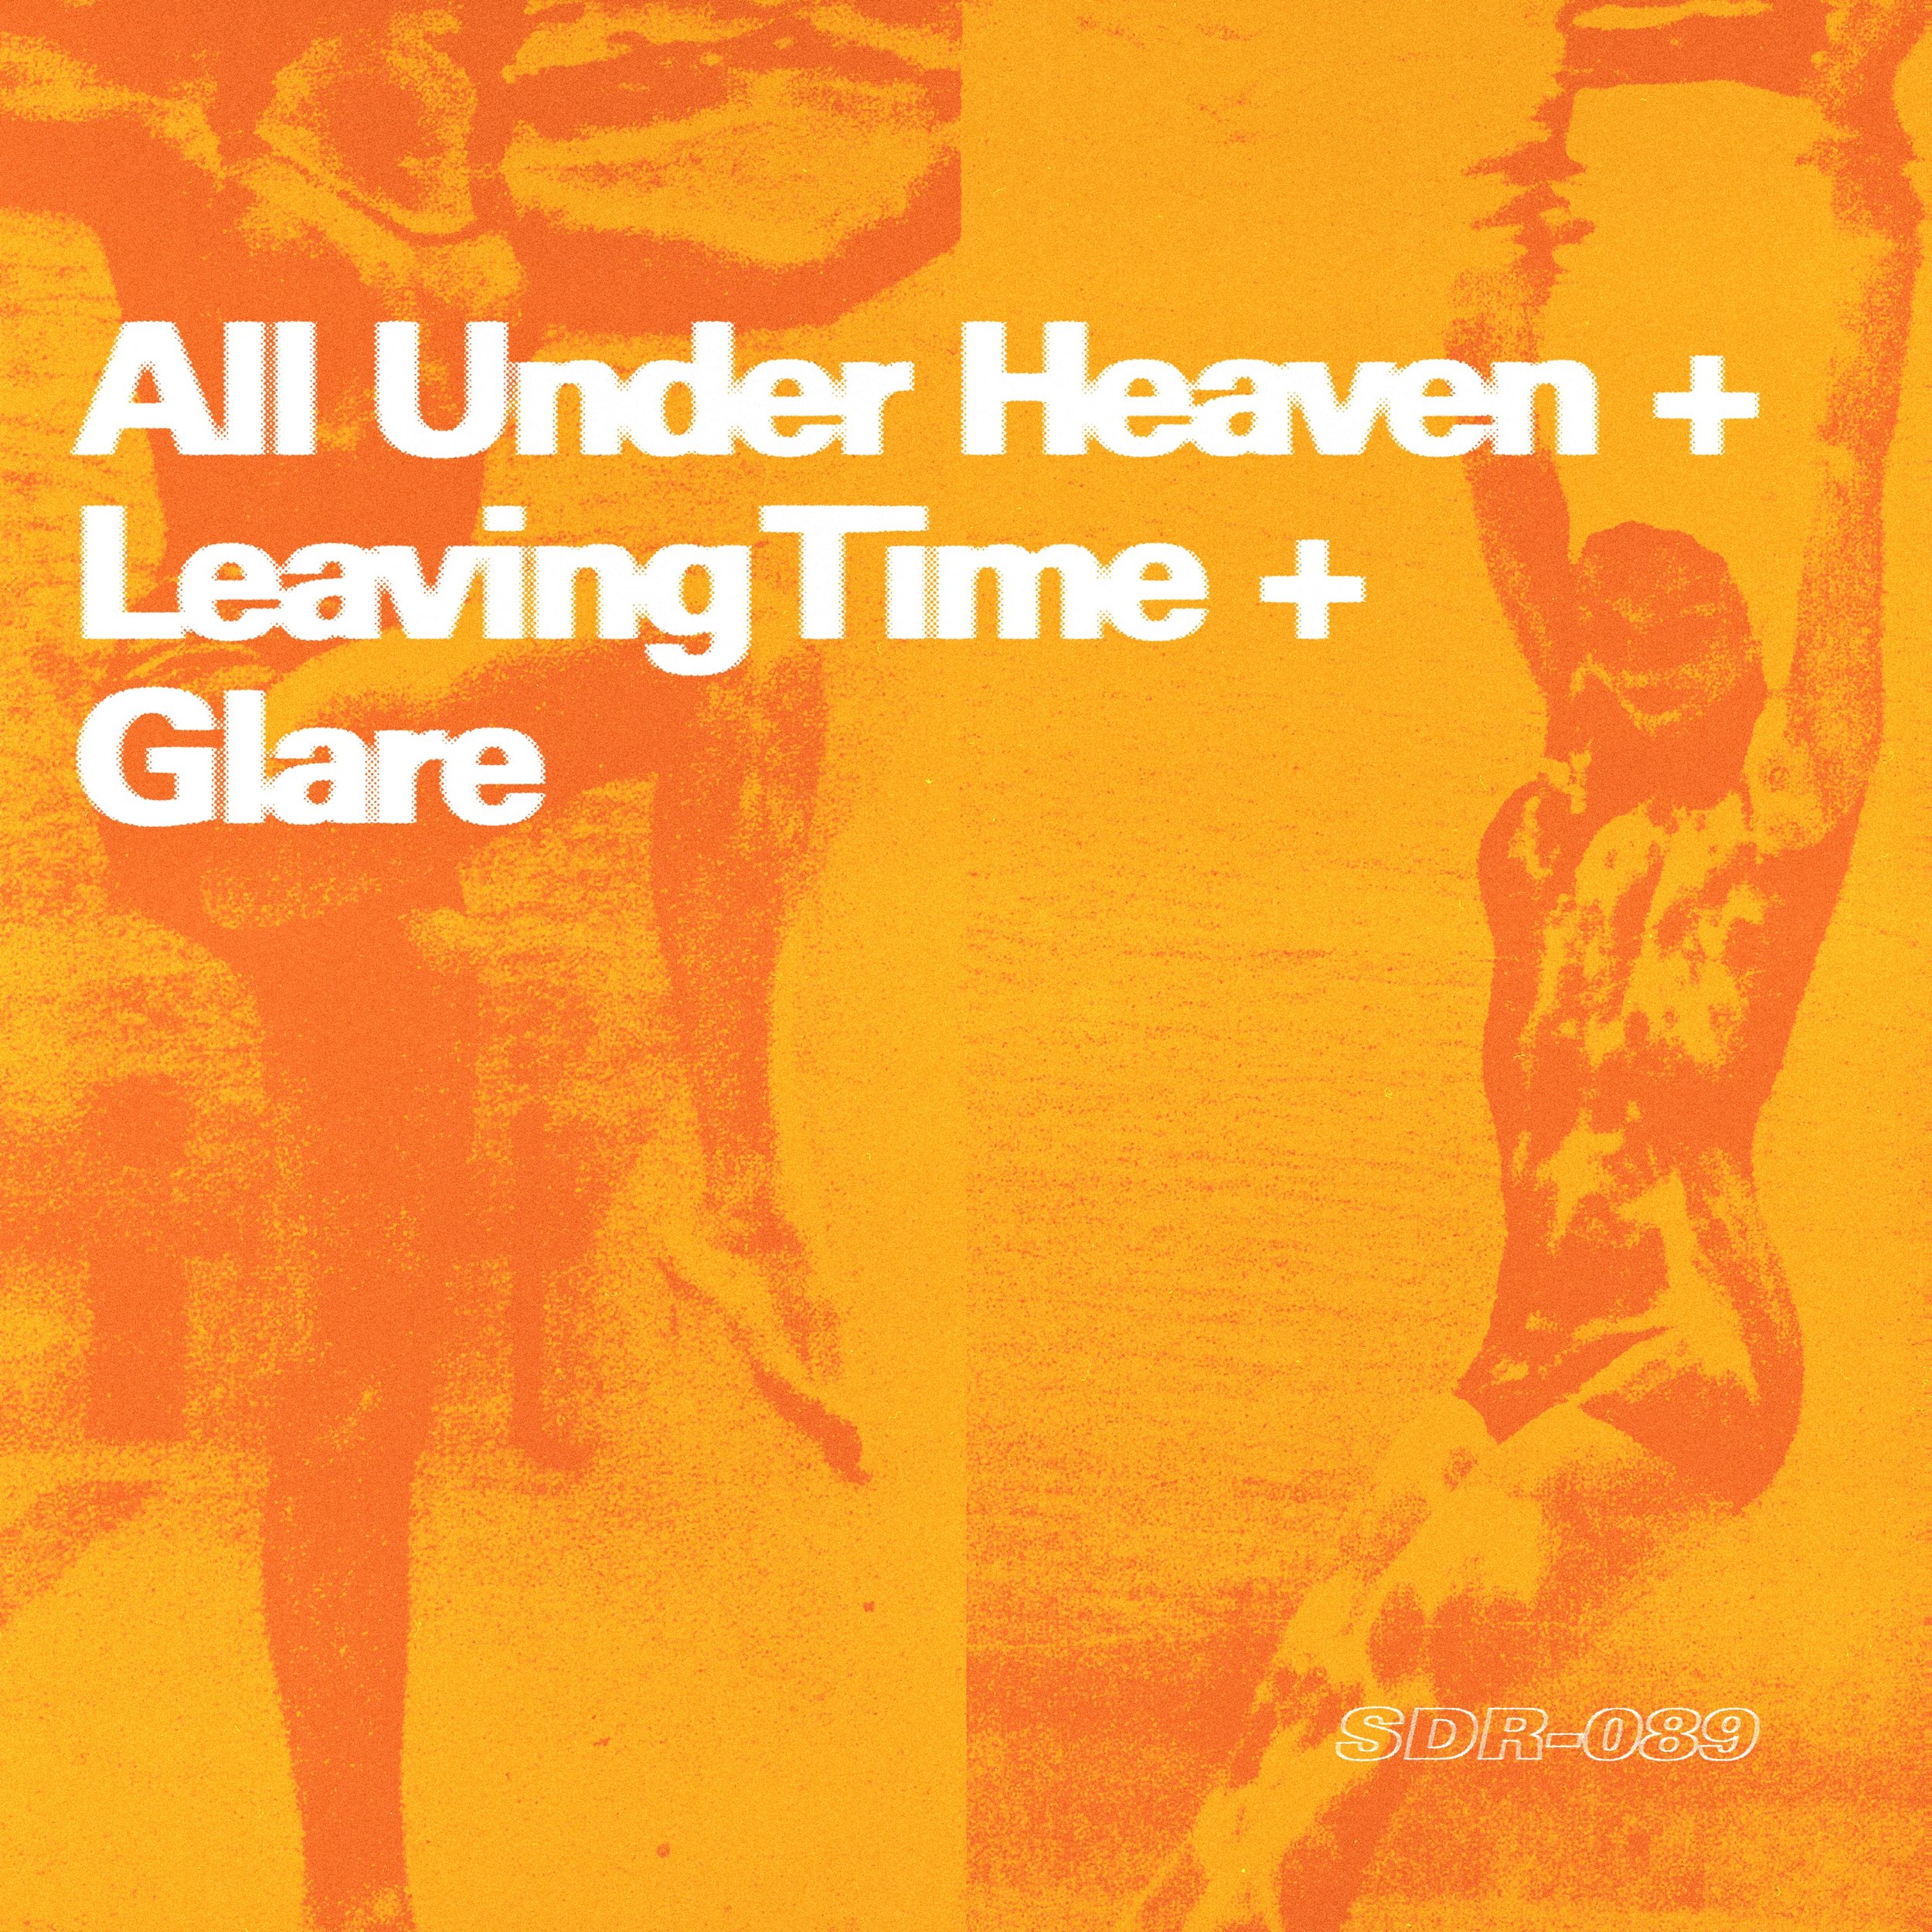 All Under Heaven + Leaving Time + Glare - Cover.jpg